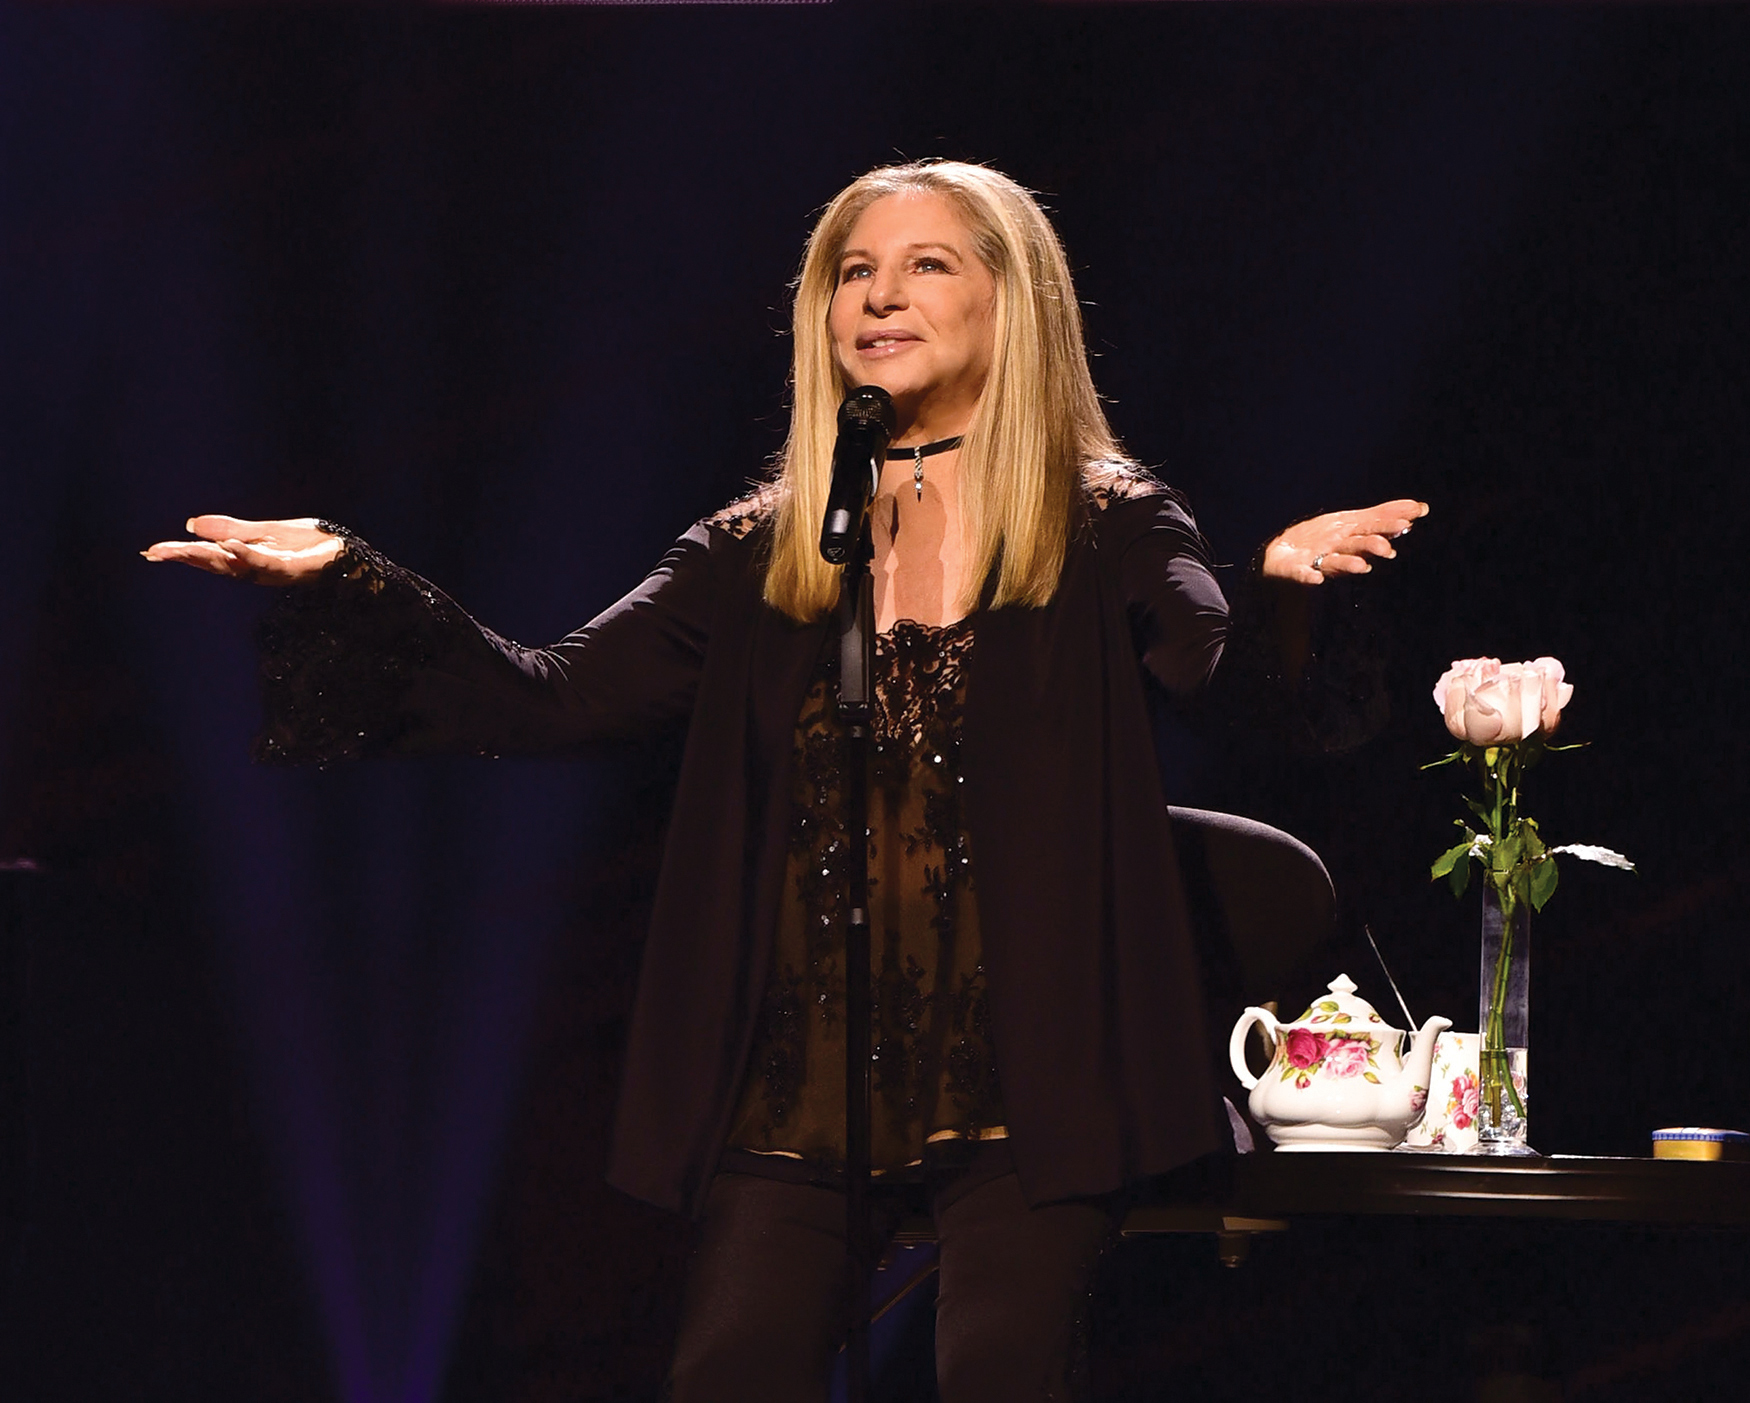 http://www.clynemedia.com/audiotechnica/Reitzas_Streisand/Streisand_AE5400.jpg